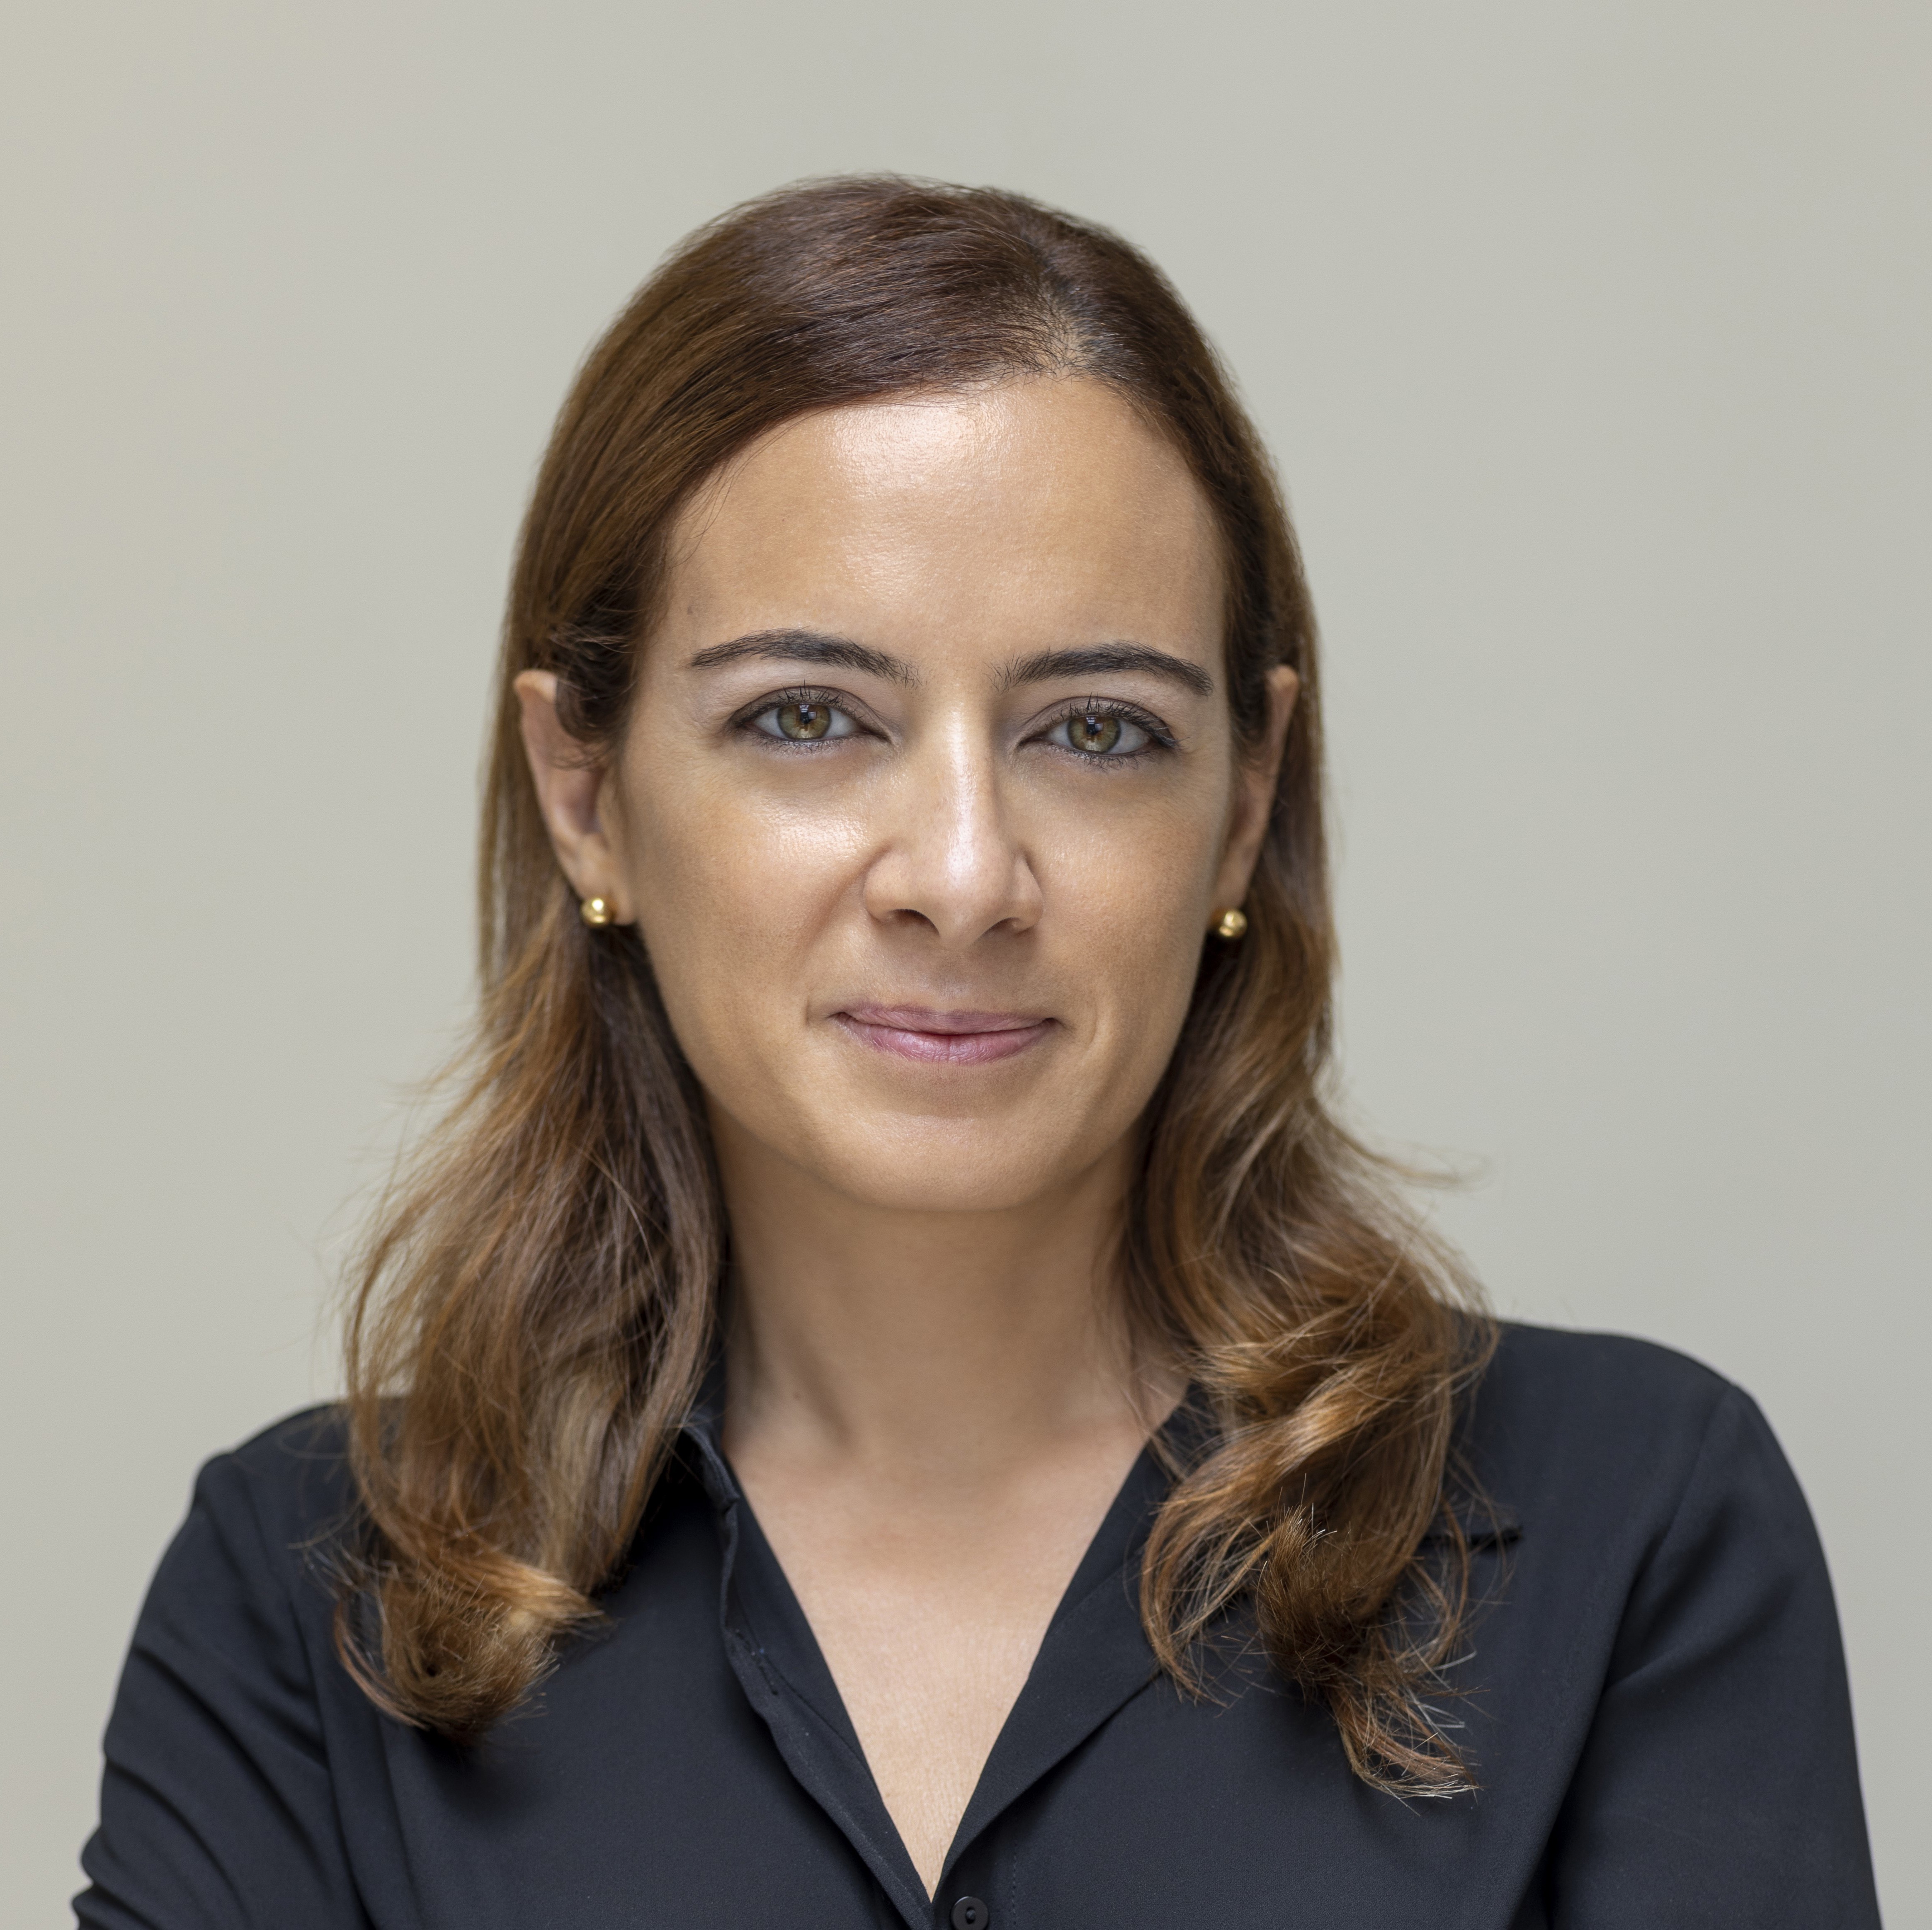 Lara El Saad